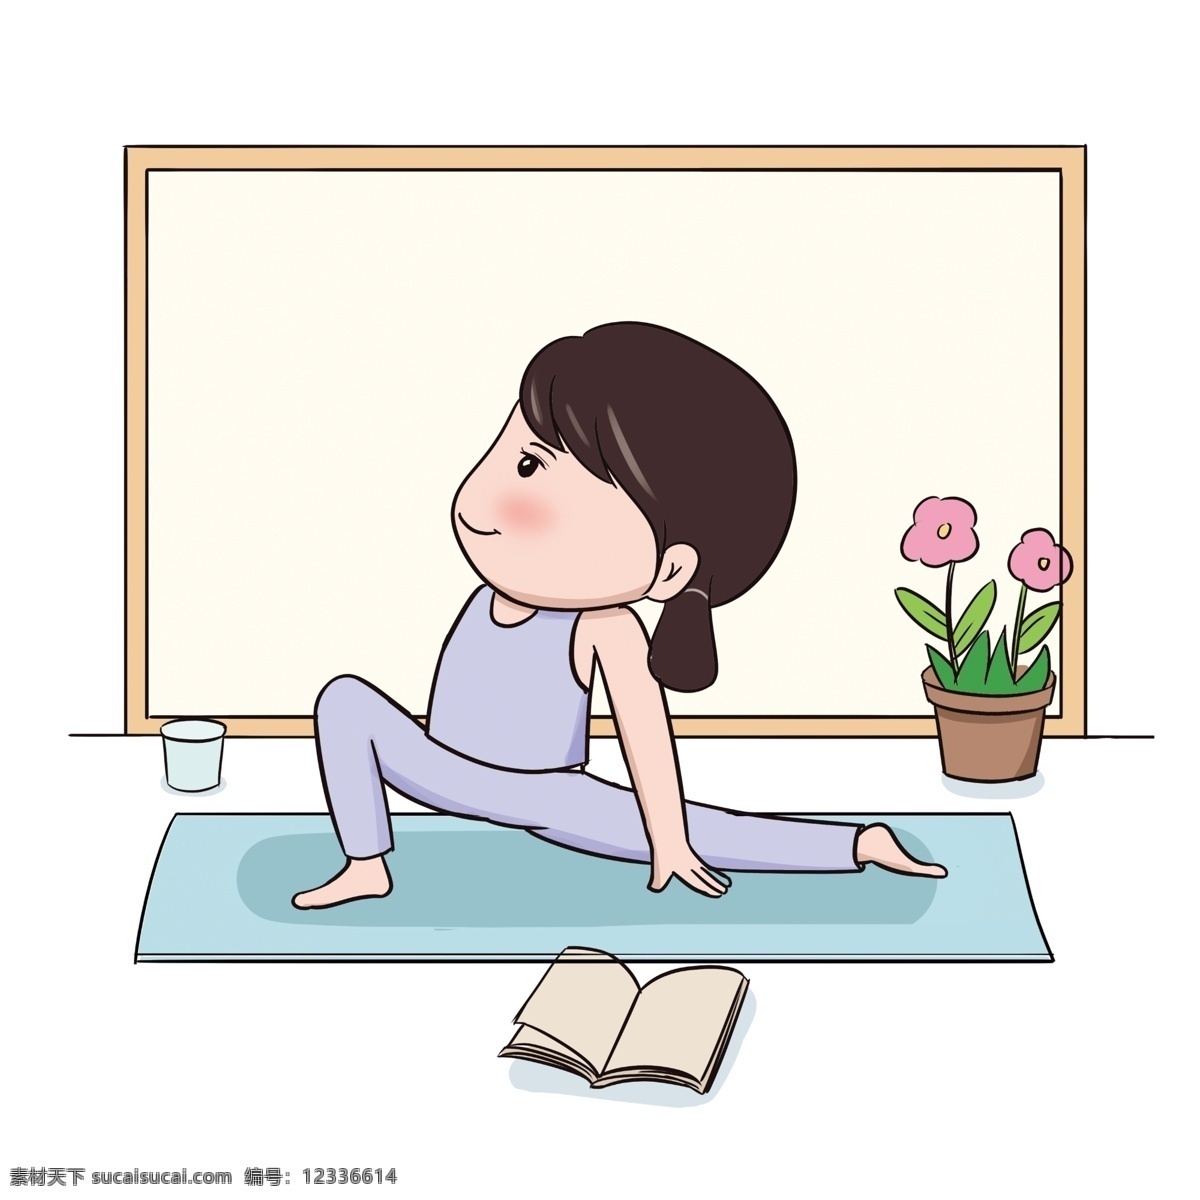 卡通 手绘 健身健美 小女孩 健身 美体 动作姿势 拉伸 腿部运动 水杯 花朵 花盆 瑜伽垫子 书本 室内运动 插画